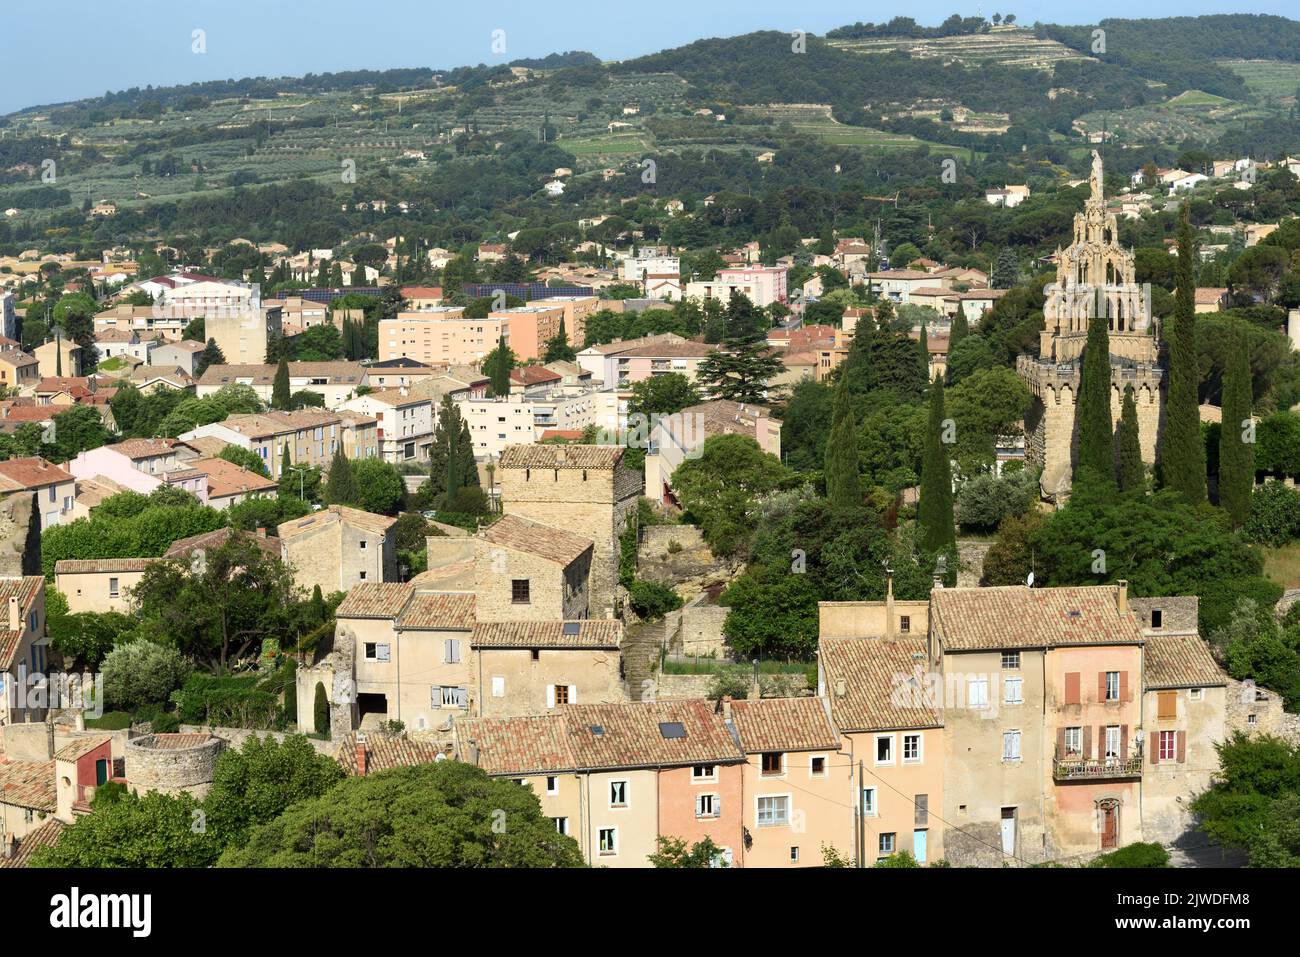 Blick über die Altstadt von Nyons mit dem mittelalterlichen Steinturm, Tour Randonne & gotische Kapelle Notre-Dame-de-Bon-Secours Nyons Drôme Provence Frankreich Stockfoto